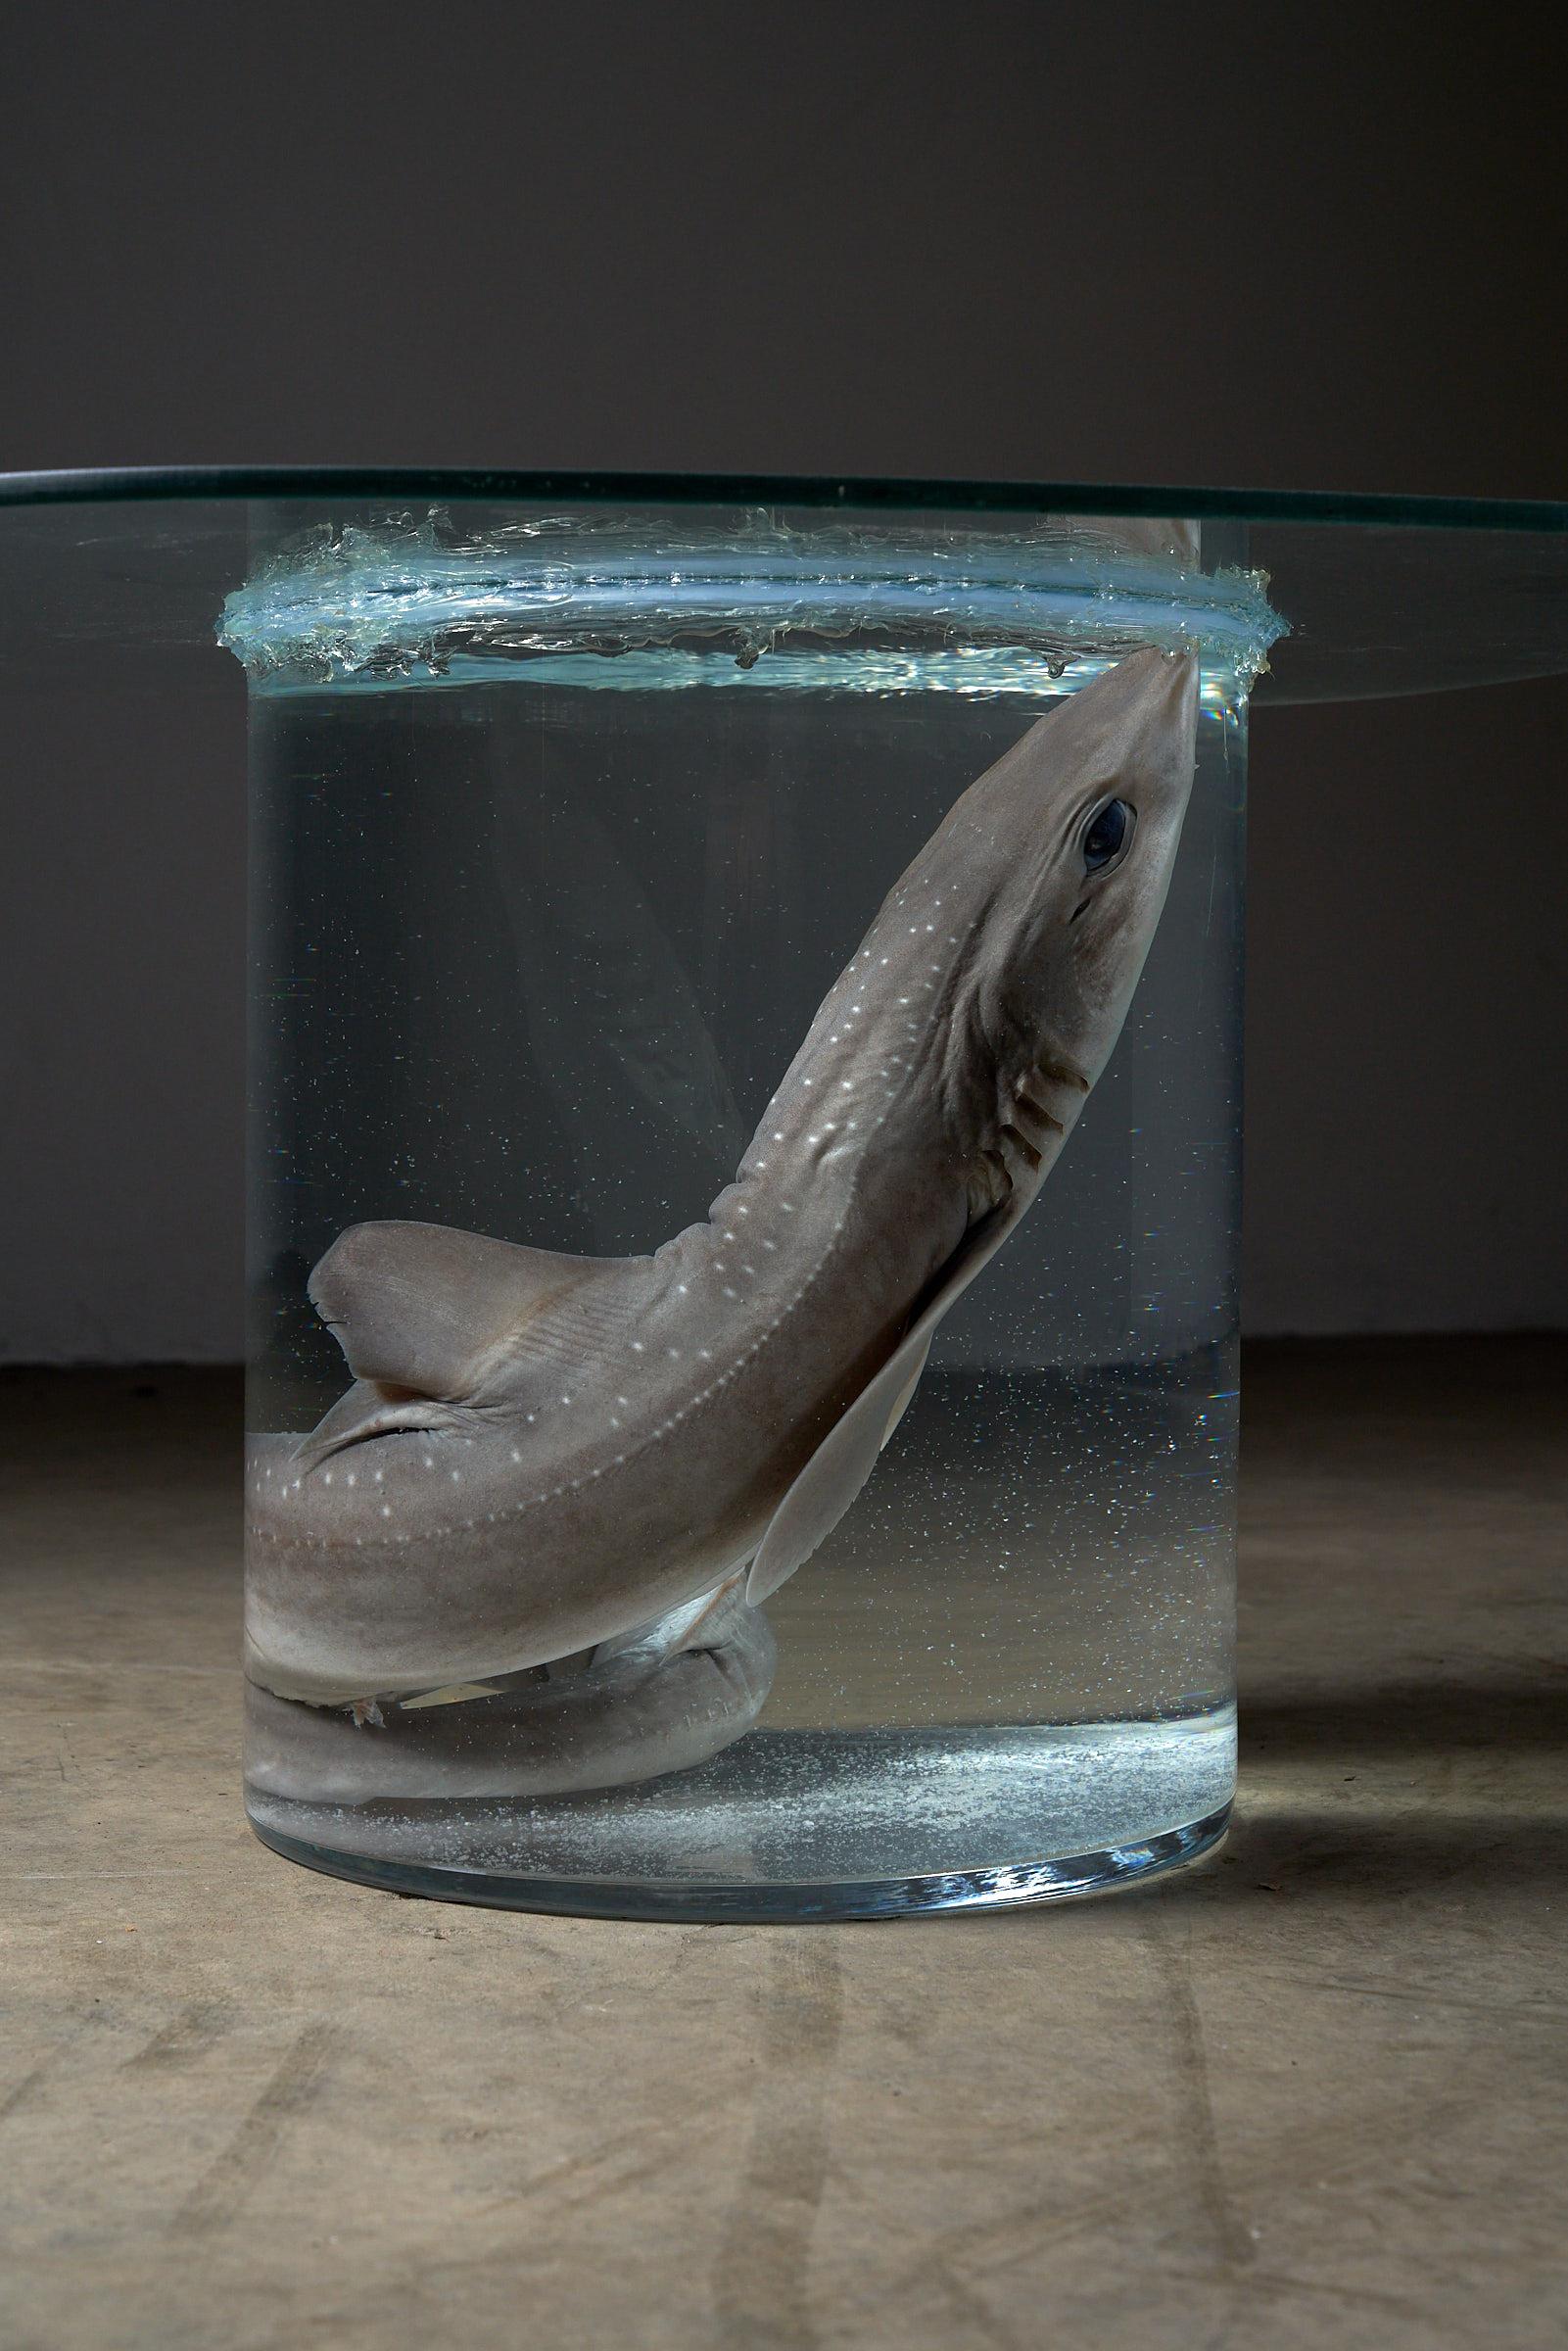 Voici notre extraordinaire table d'appoint en formaldéhyde requin, véritable chef-d'œuvre d'art et de fonctionnalité. Niché dans une enceinte ronde et transparente en verre, un requin préservé repose sereinement dans le formaldéhyde. Couronné d'un